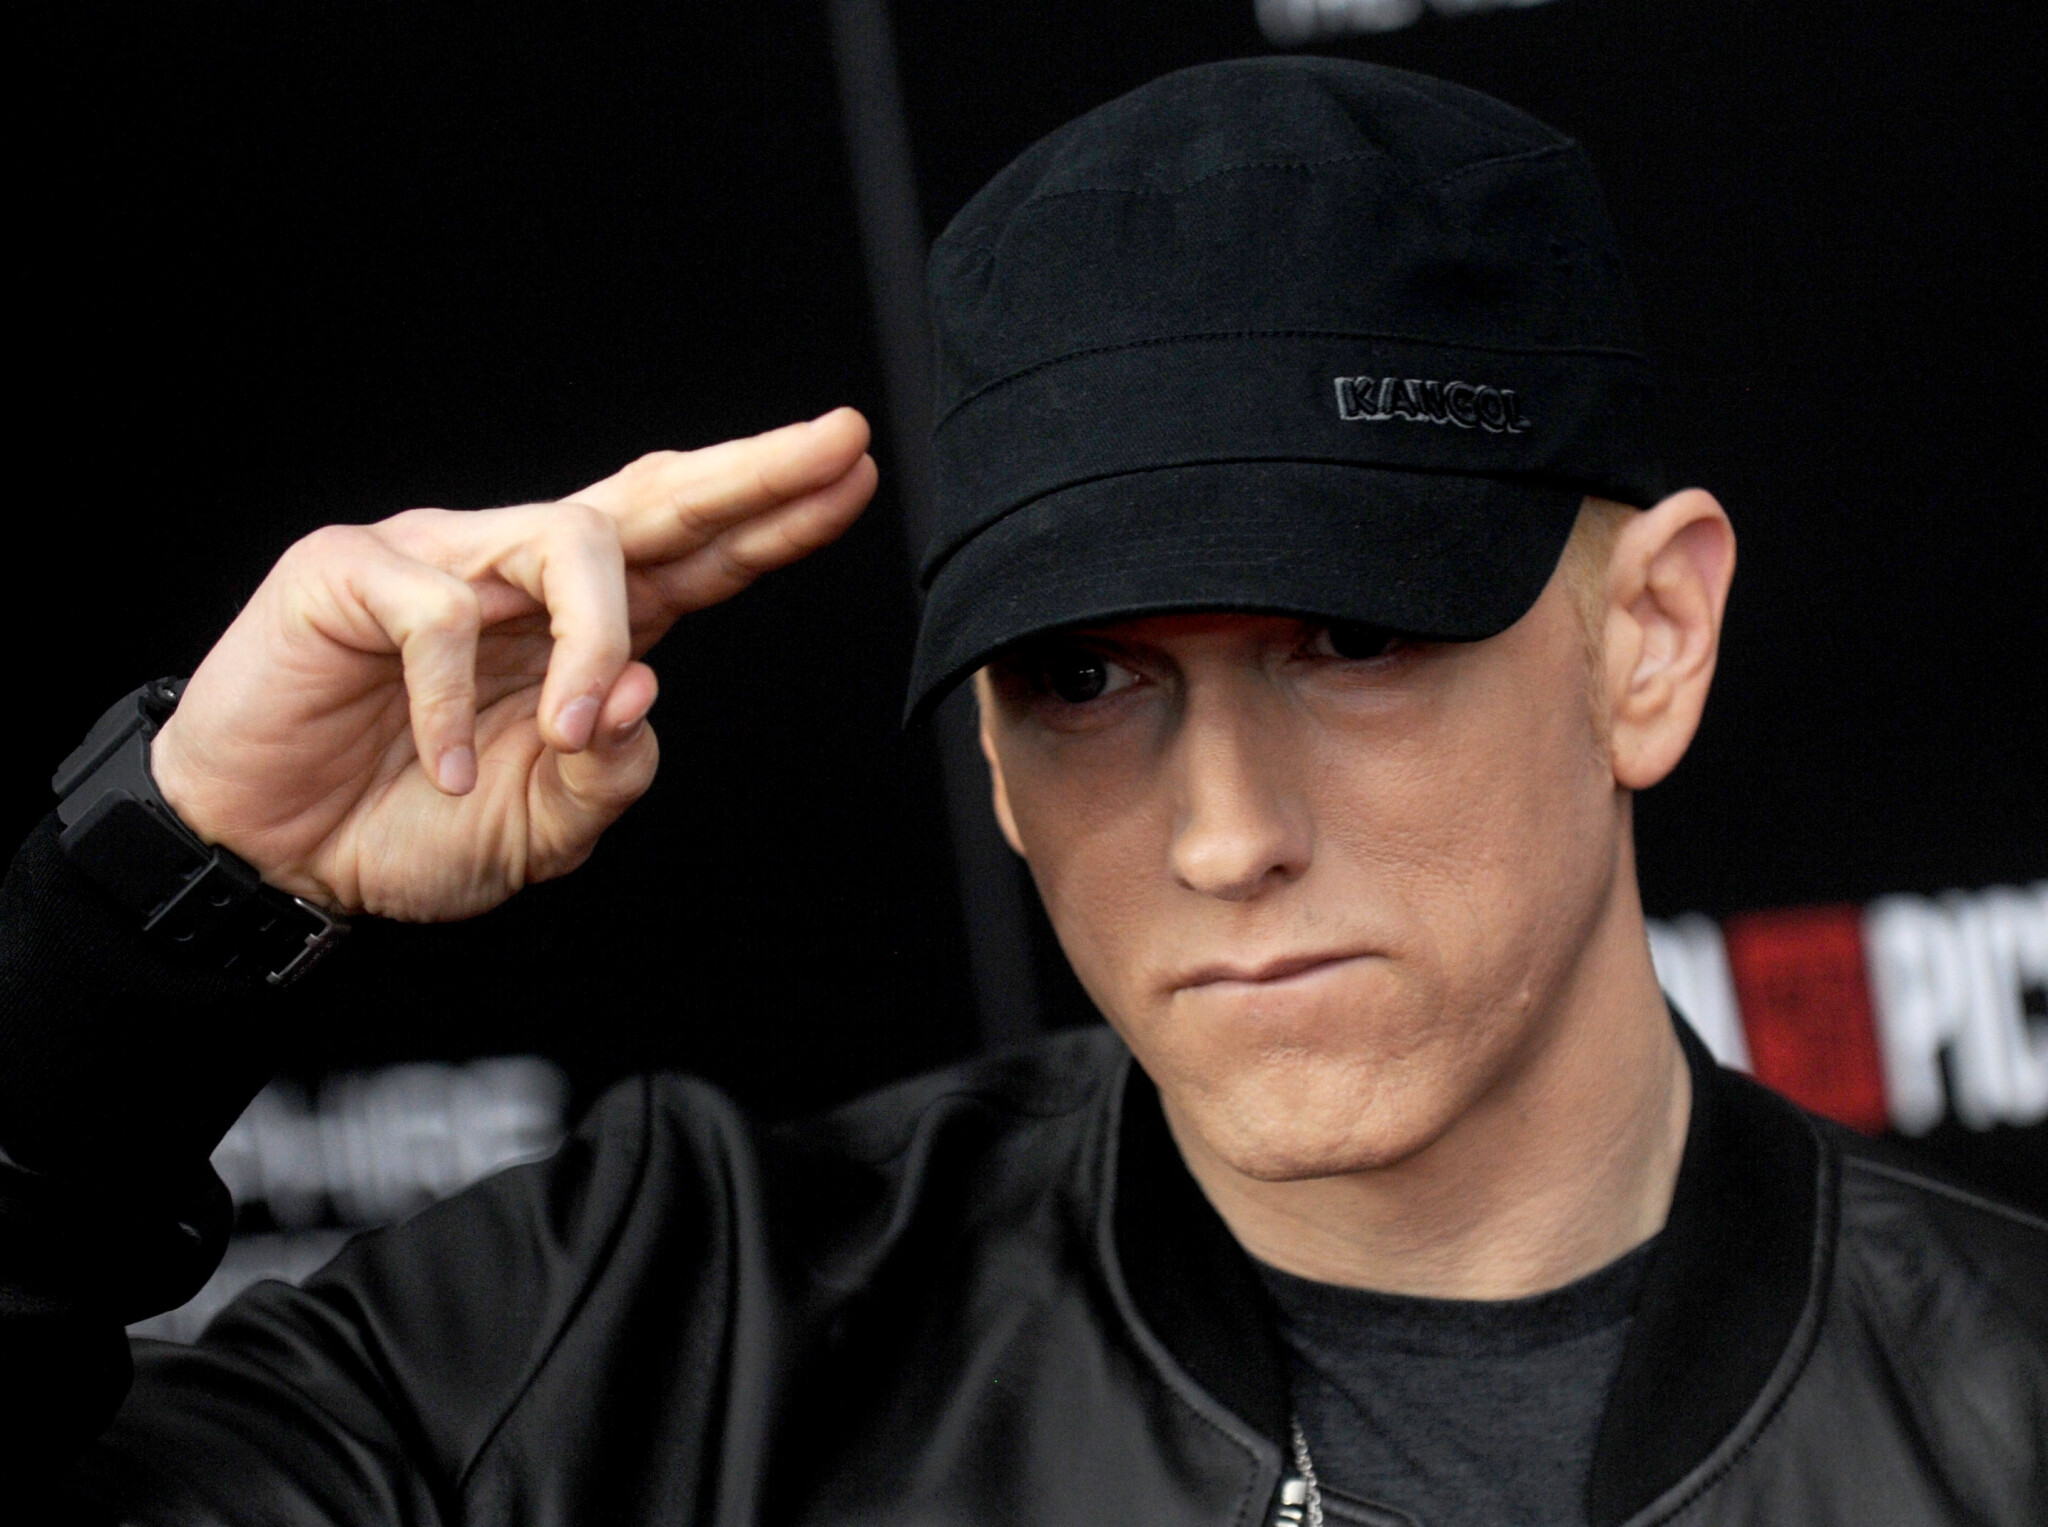 Spotify nezaplatilo Eminemovi, raper chce vysoudit desítky milionů dolarů